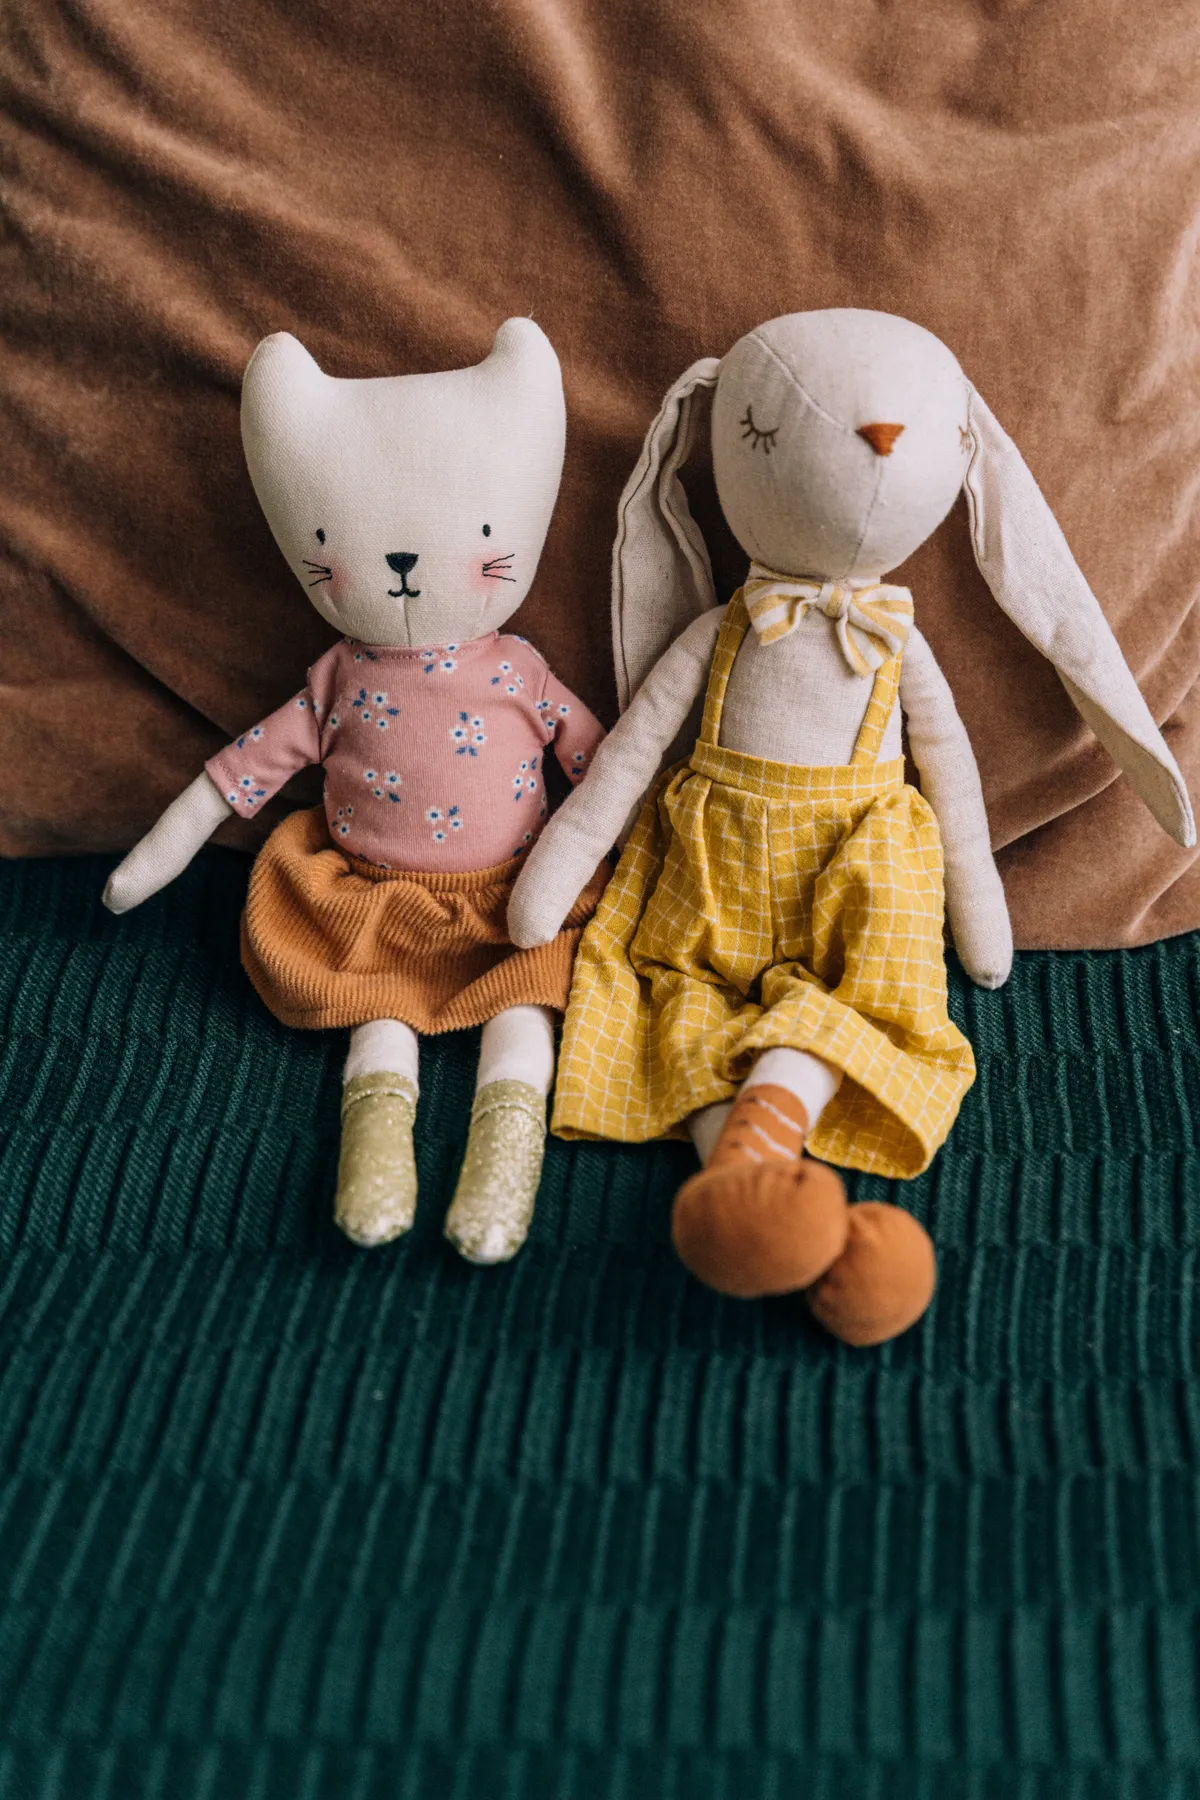 J'avais des poupées comme ça, ma préférée est un lapin appelé Connie | Source : Pexels